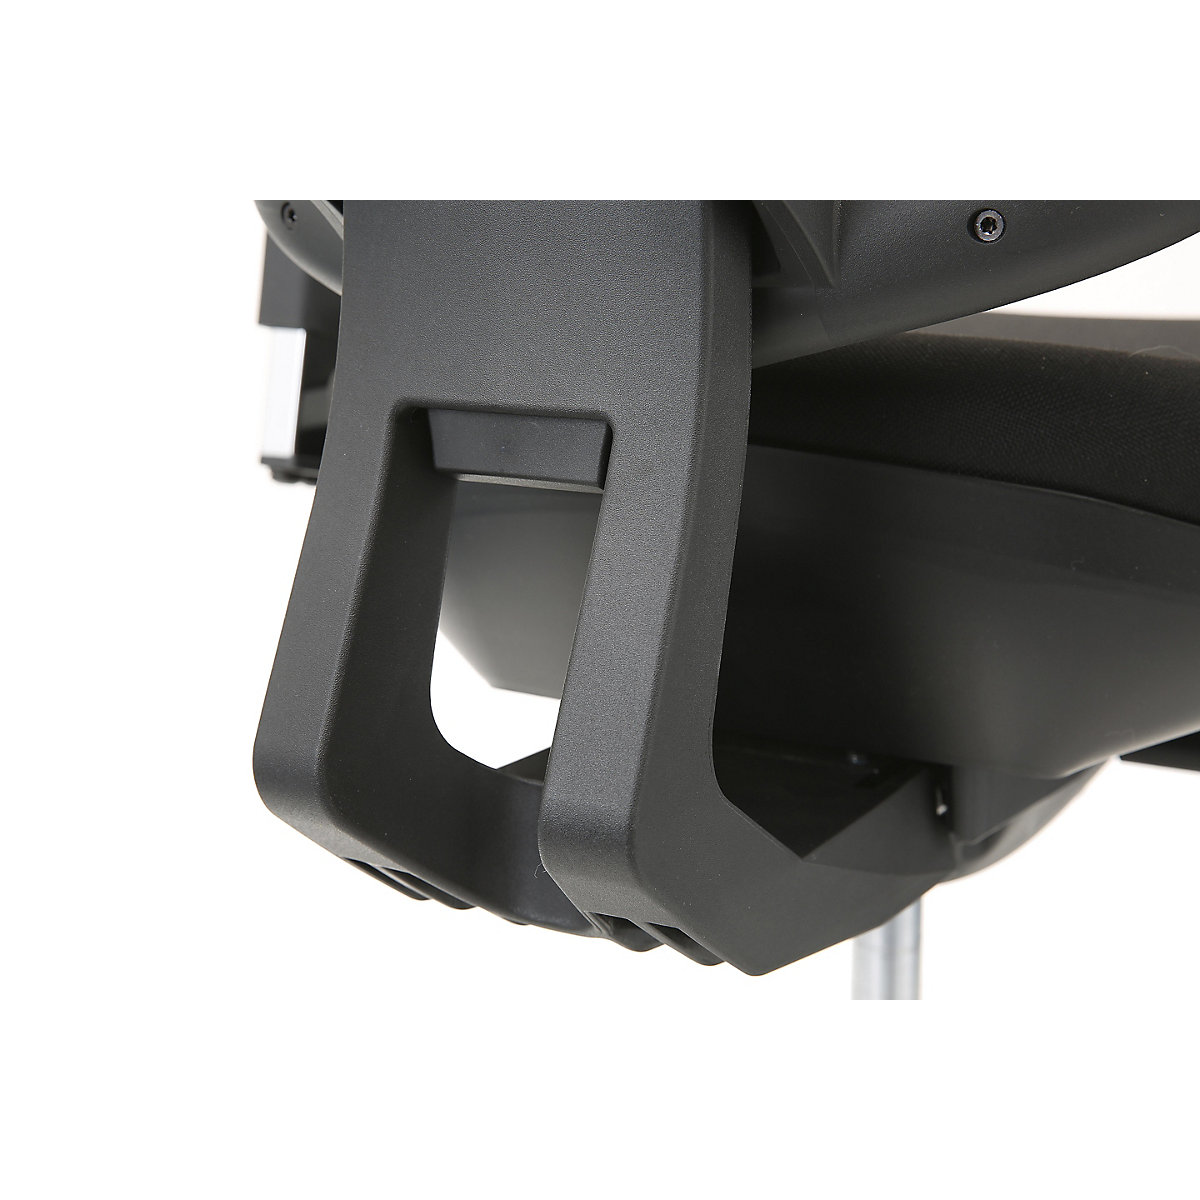 Krzesło obrotowe z podporą lędźwi, mechanizm synchroniczny, siedzisko z podporą lędźwi – Topstar (Zdjęcie produktu 13)-12